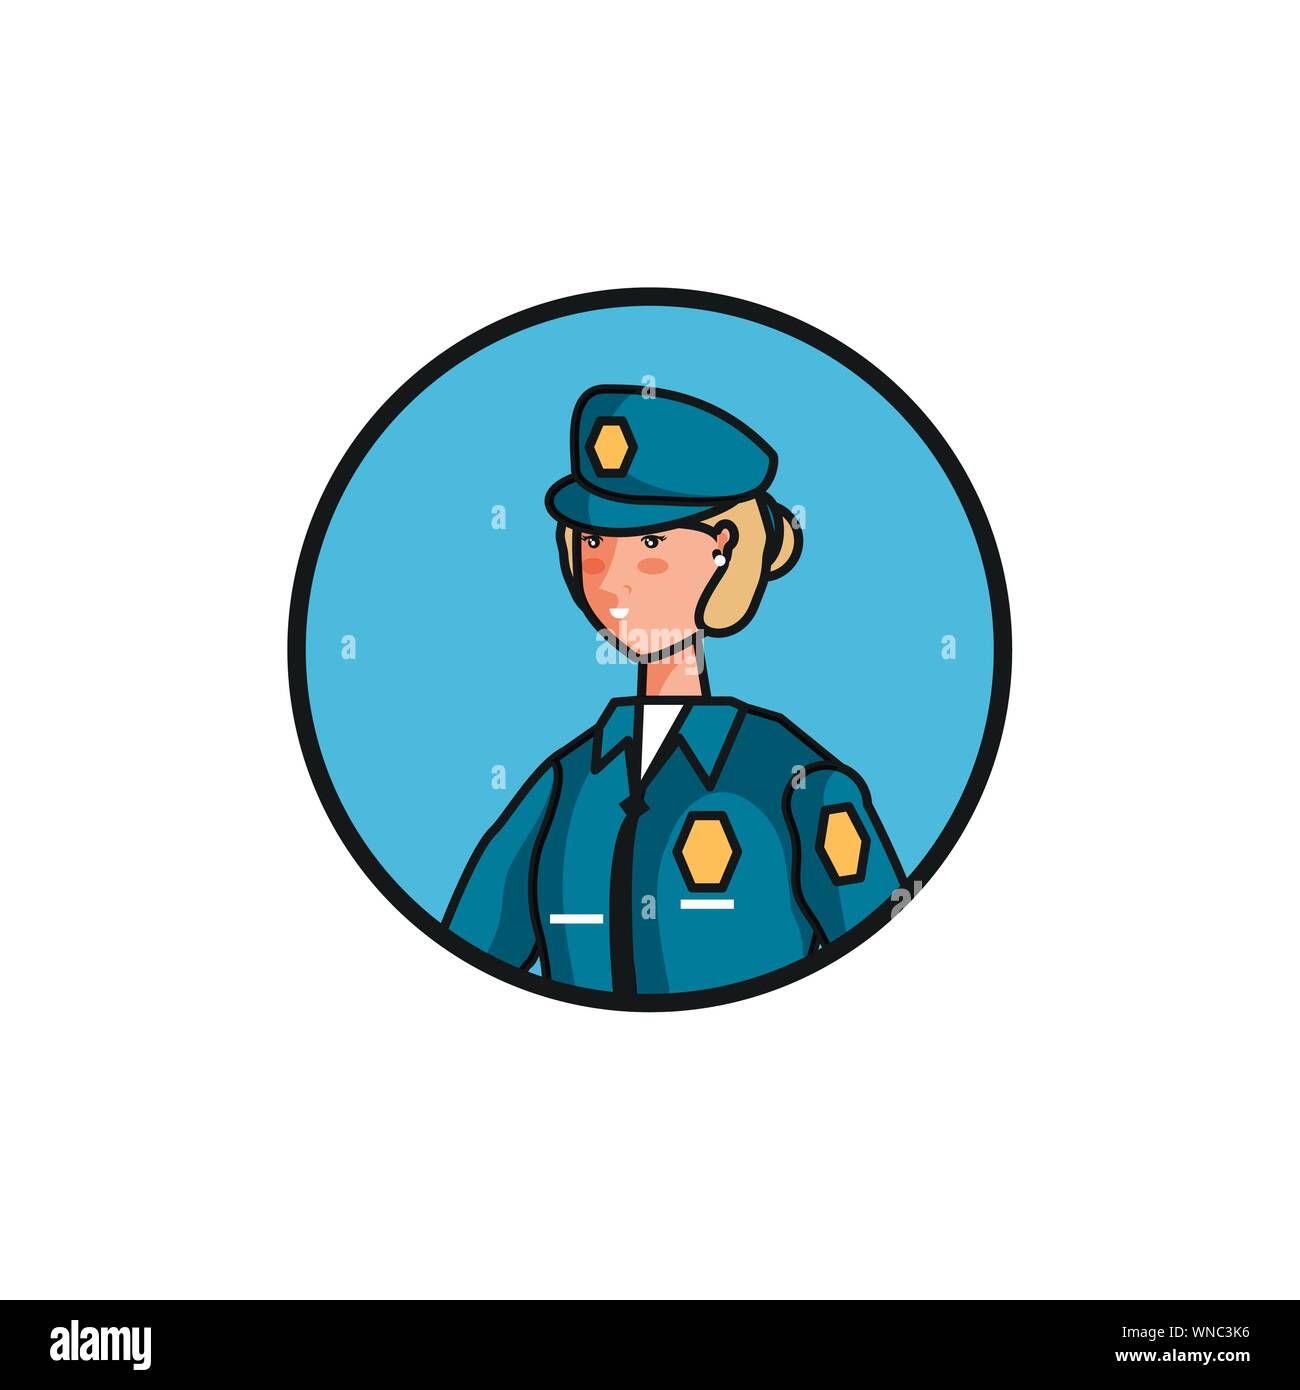 female police officer avatar character vector illustration design Stock Vector